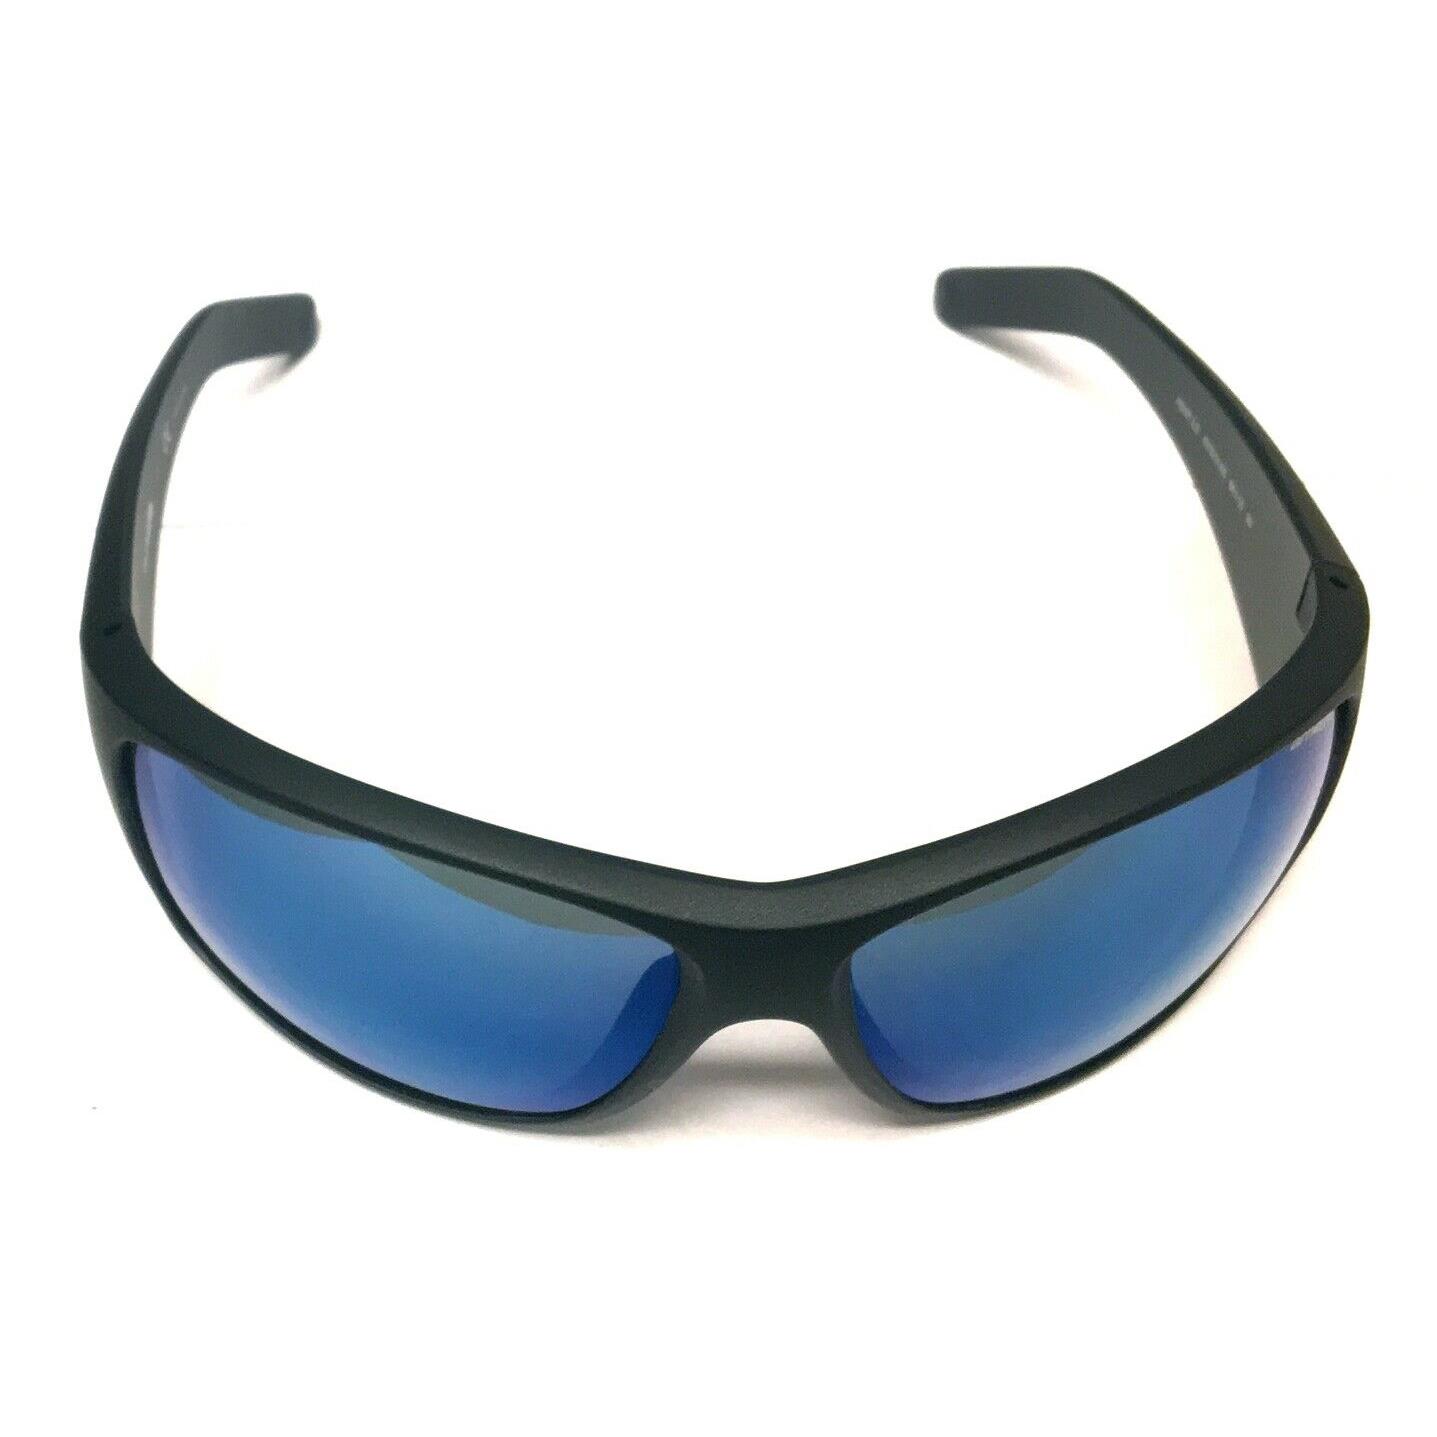 Arnette Heist 2.0 4215 01/55 Sunglasses Matte Black with Blue Mirrored Lenses